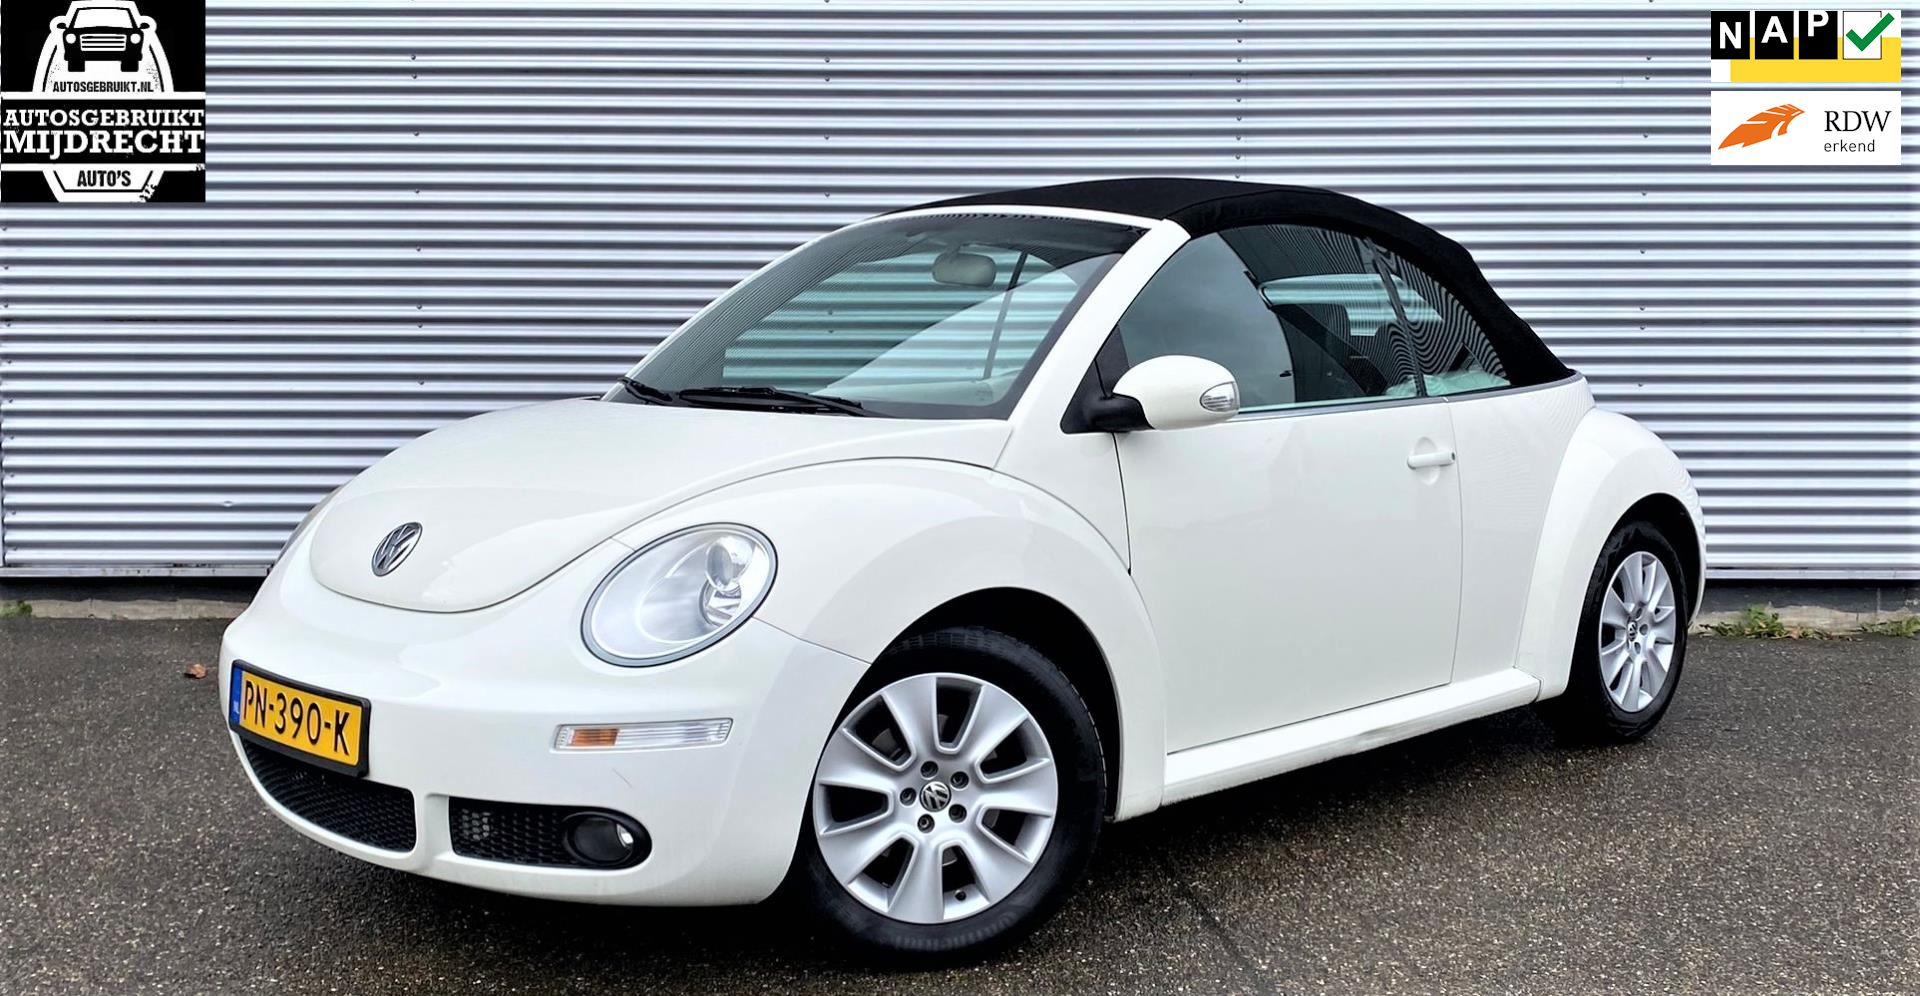 Volkswagen New Beetle Cabriolet occasion - Autosgebruikt Mijdrecht